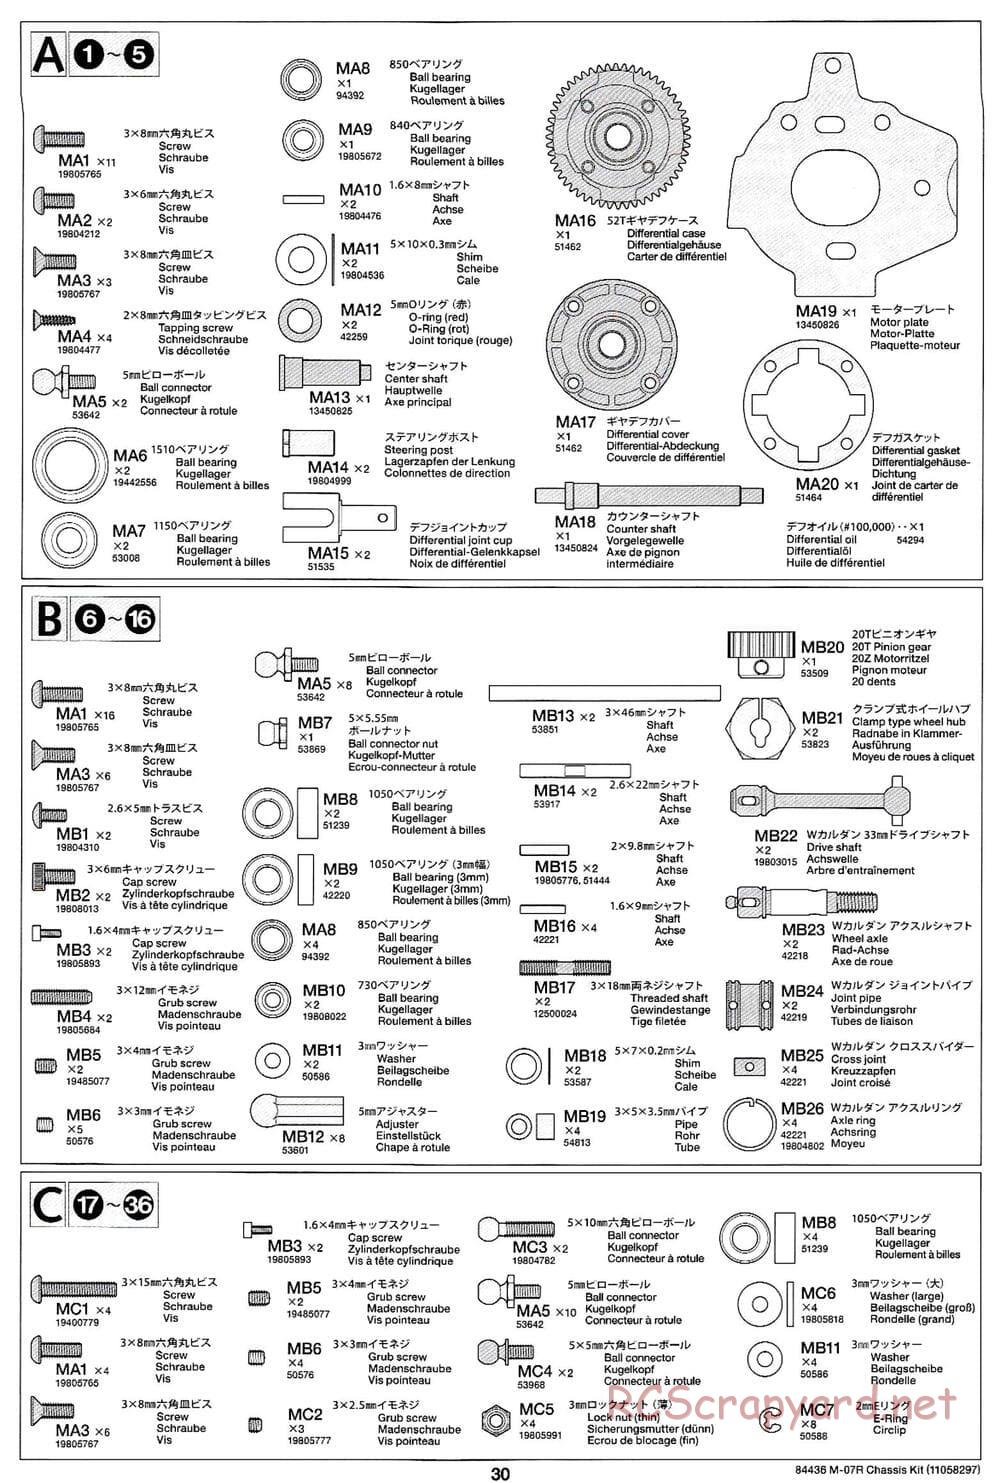 Tamiya - M-07R Chassis - Manual - Page 30